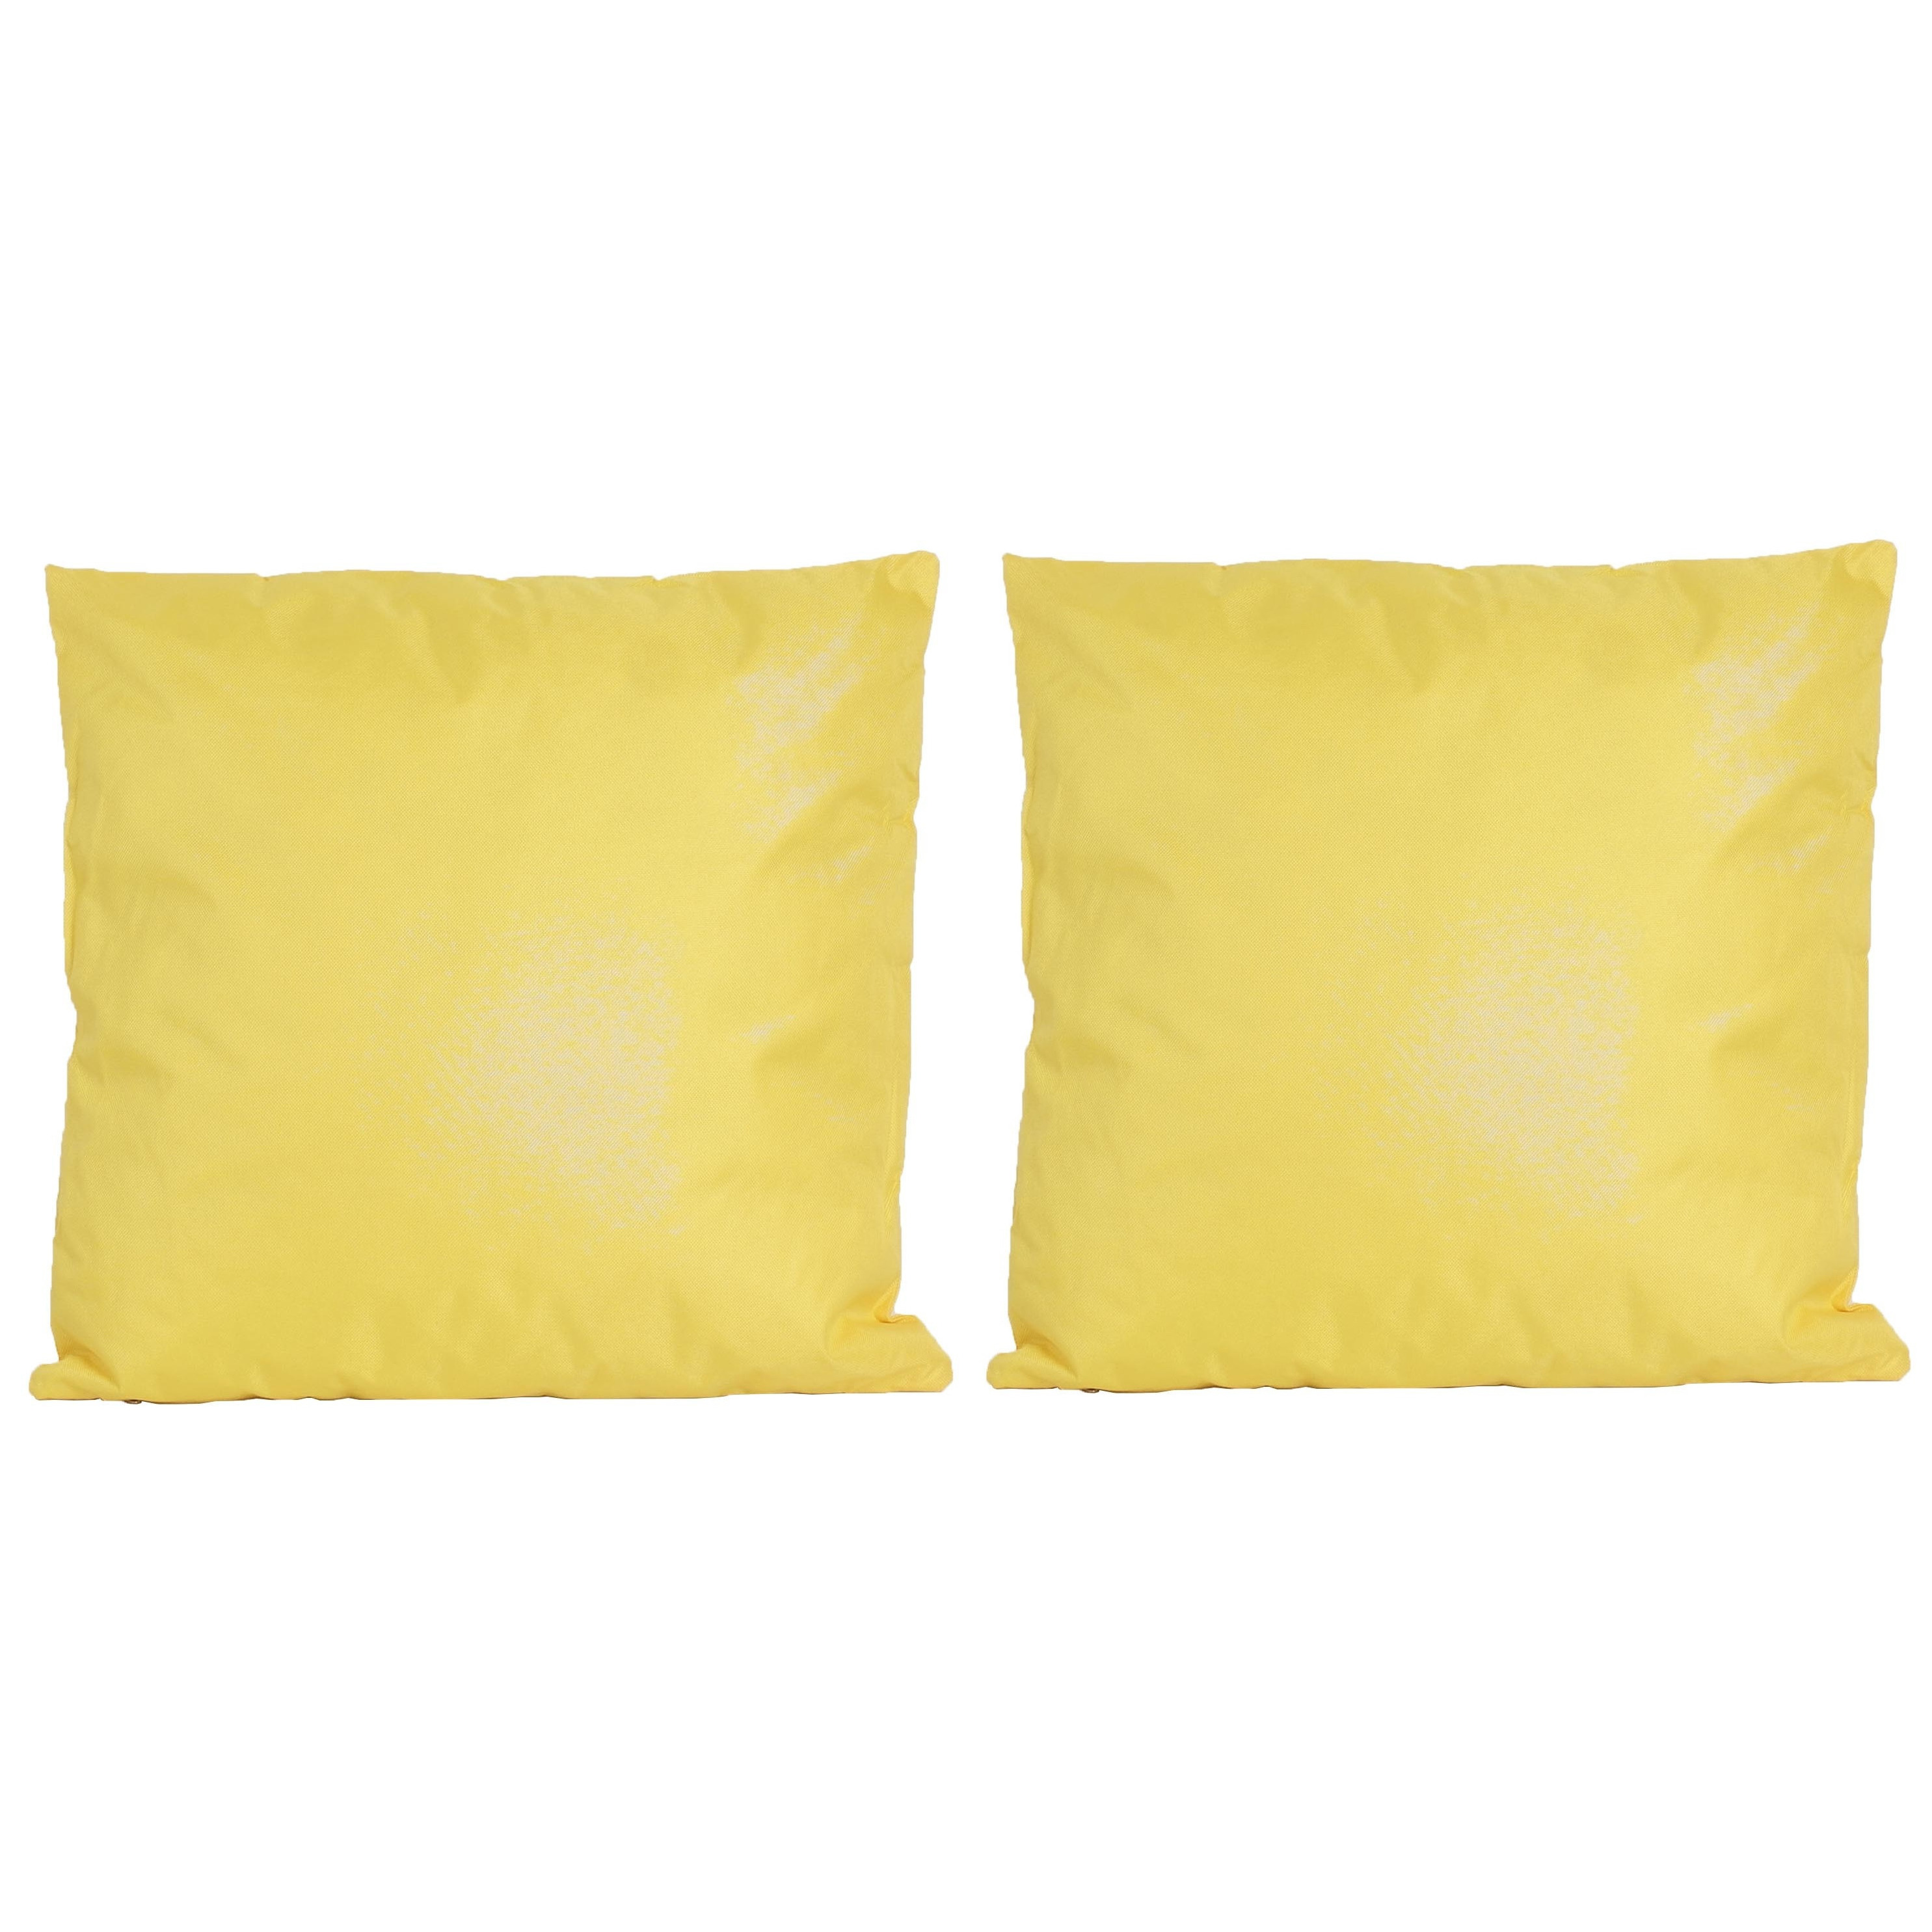 2x Bank-sier kussens voor binnen en buiten in de kleur geel 45 x 45 cm